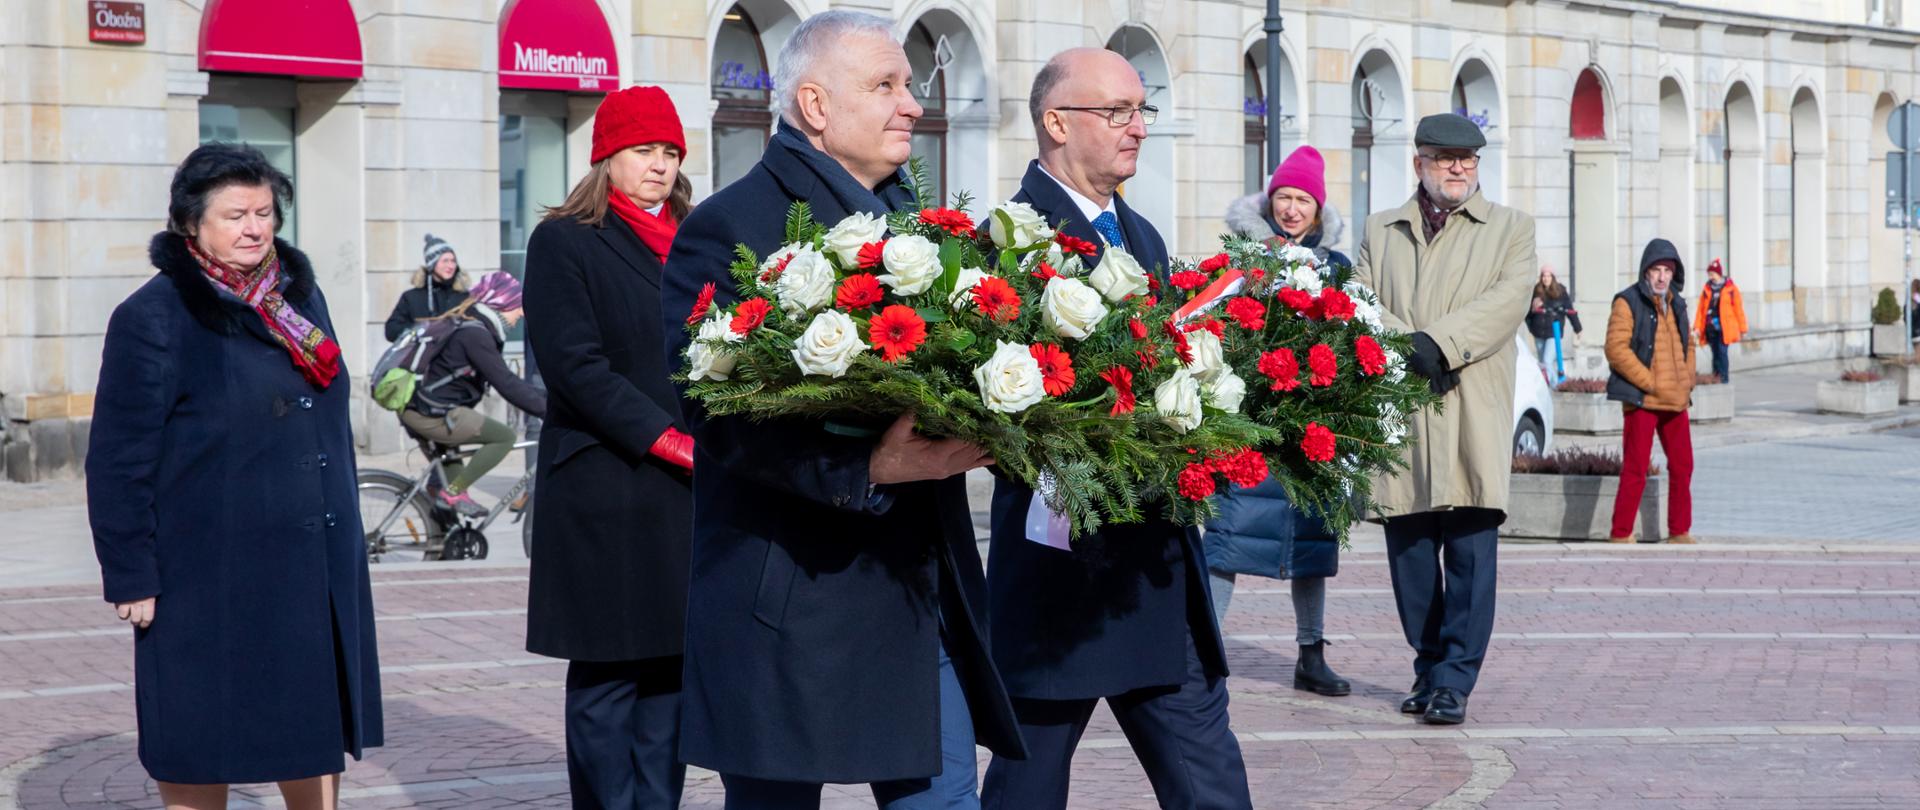 Wiceminister Piotr Wawrzyk złożył kwiaty pod pomnikiem Mikolaja Kopernika w związku z 550. rocznica urodzin astronoma.